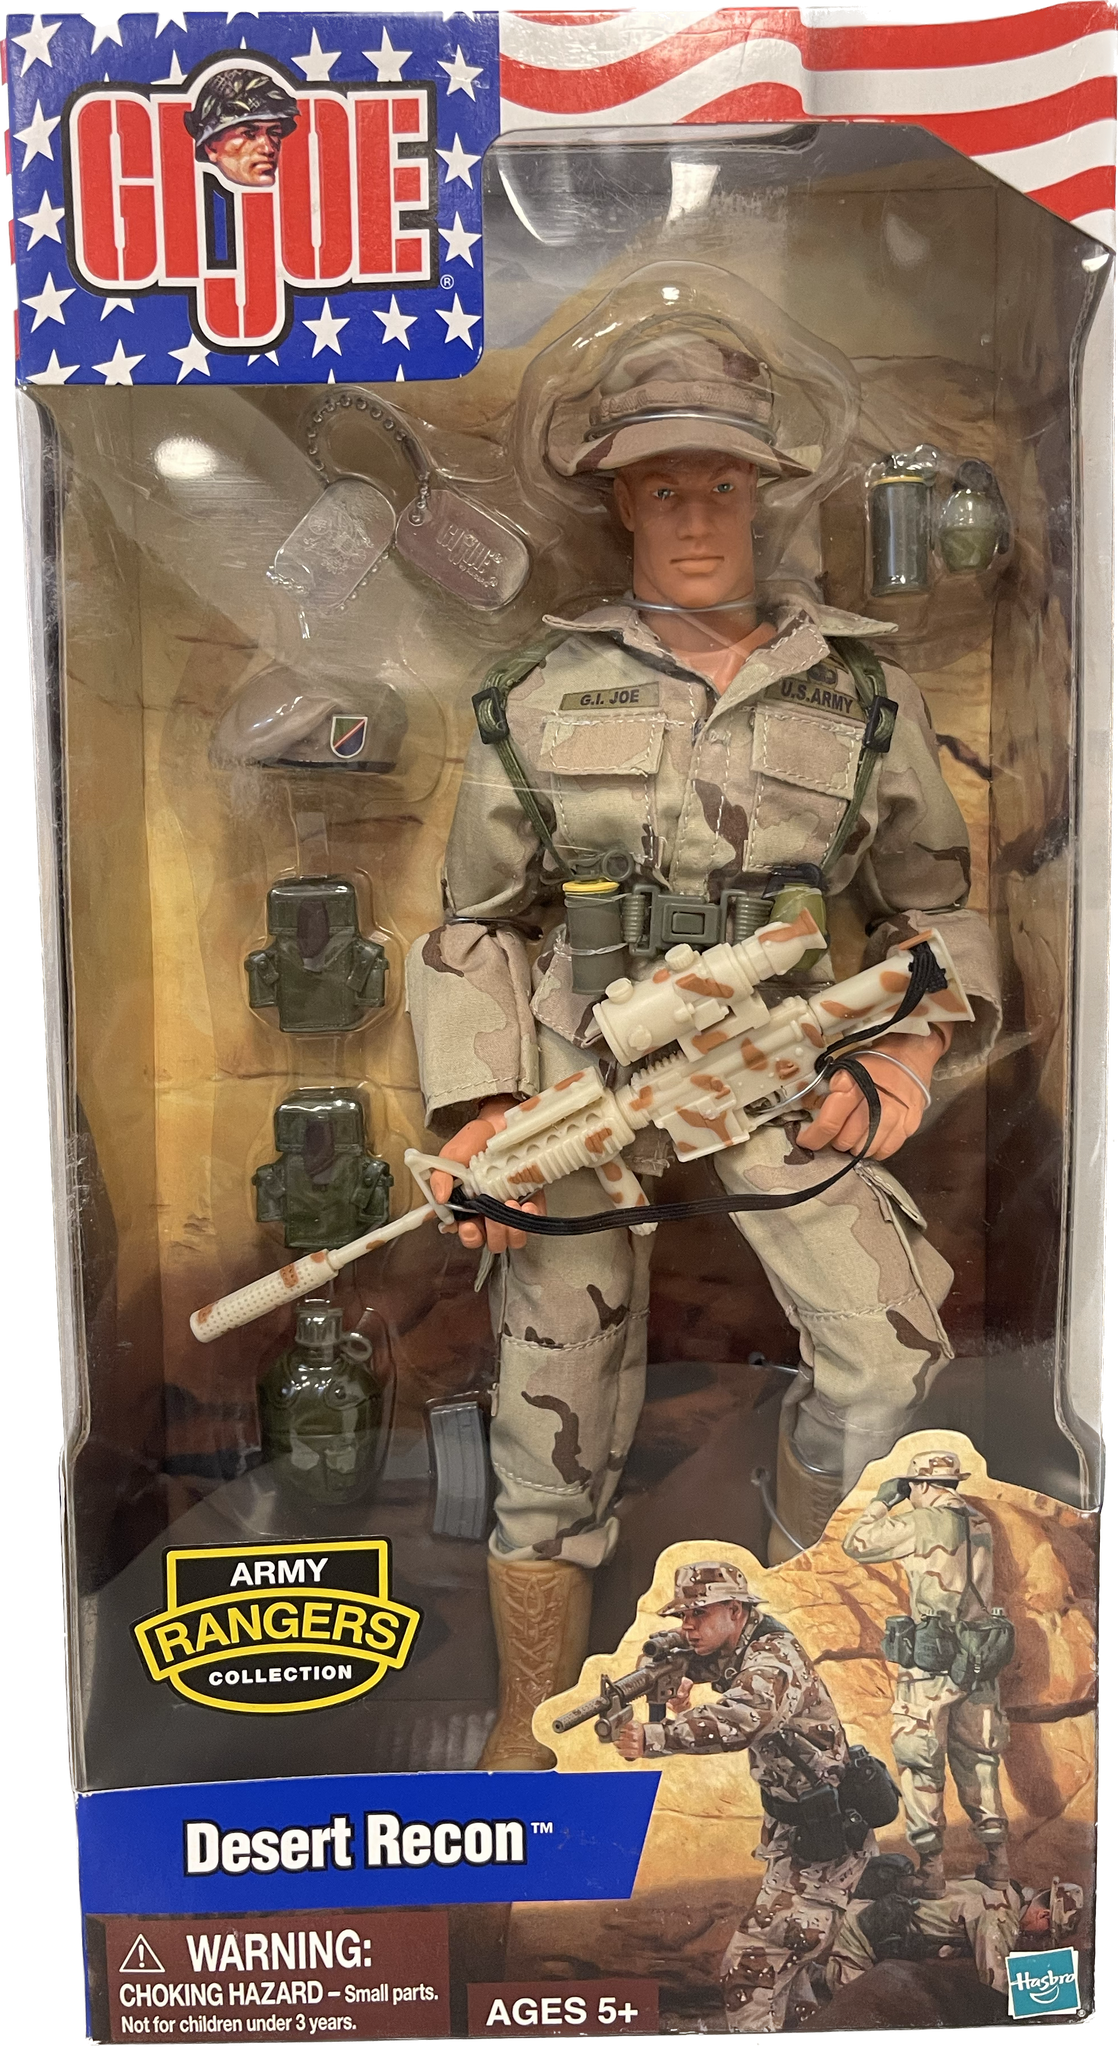 GI Joe Army Rangers Collection Desert Recon 12"